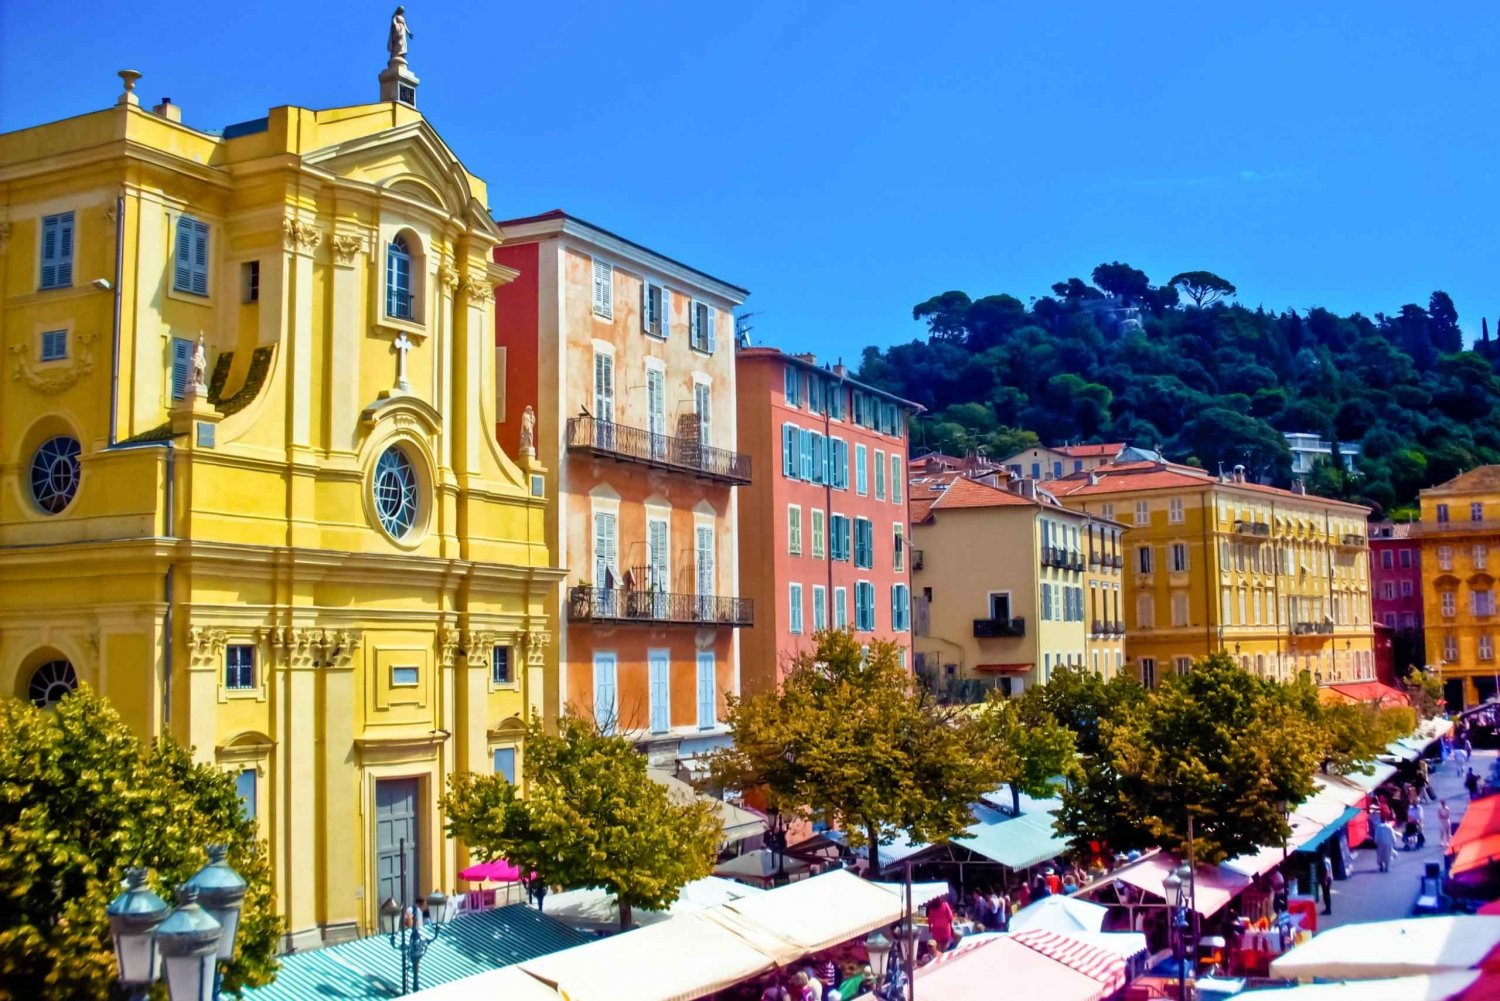 Nice: Byvandring til den gamle bydels skatte